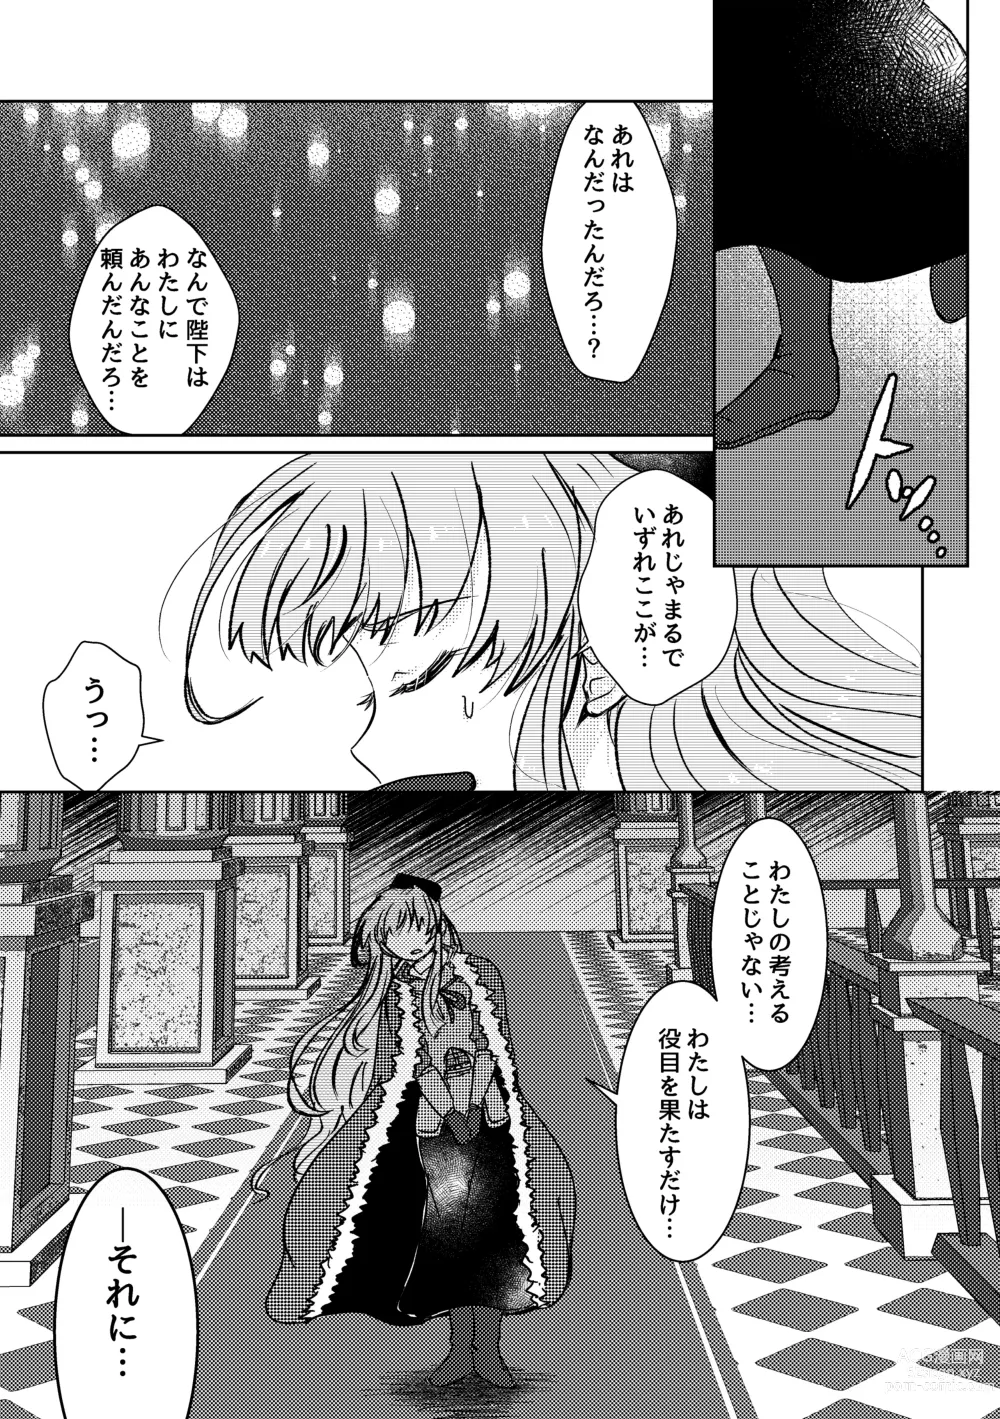 Page 6 of doujinshi Haru wo Utau